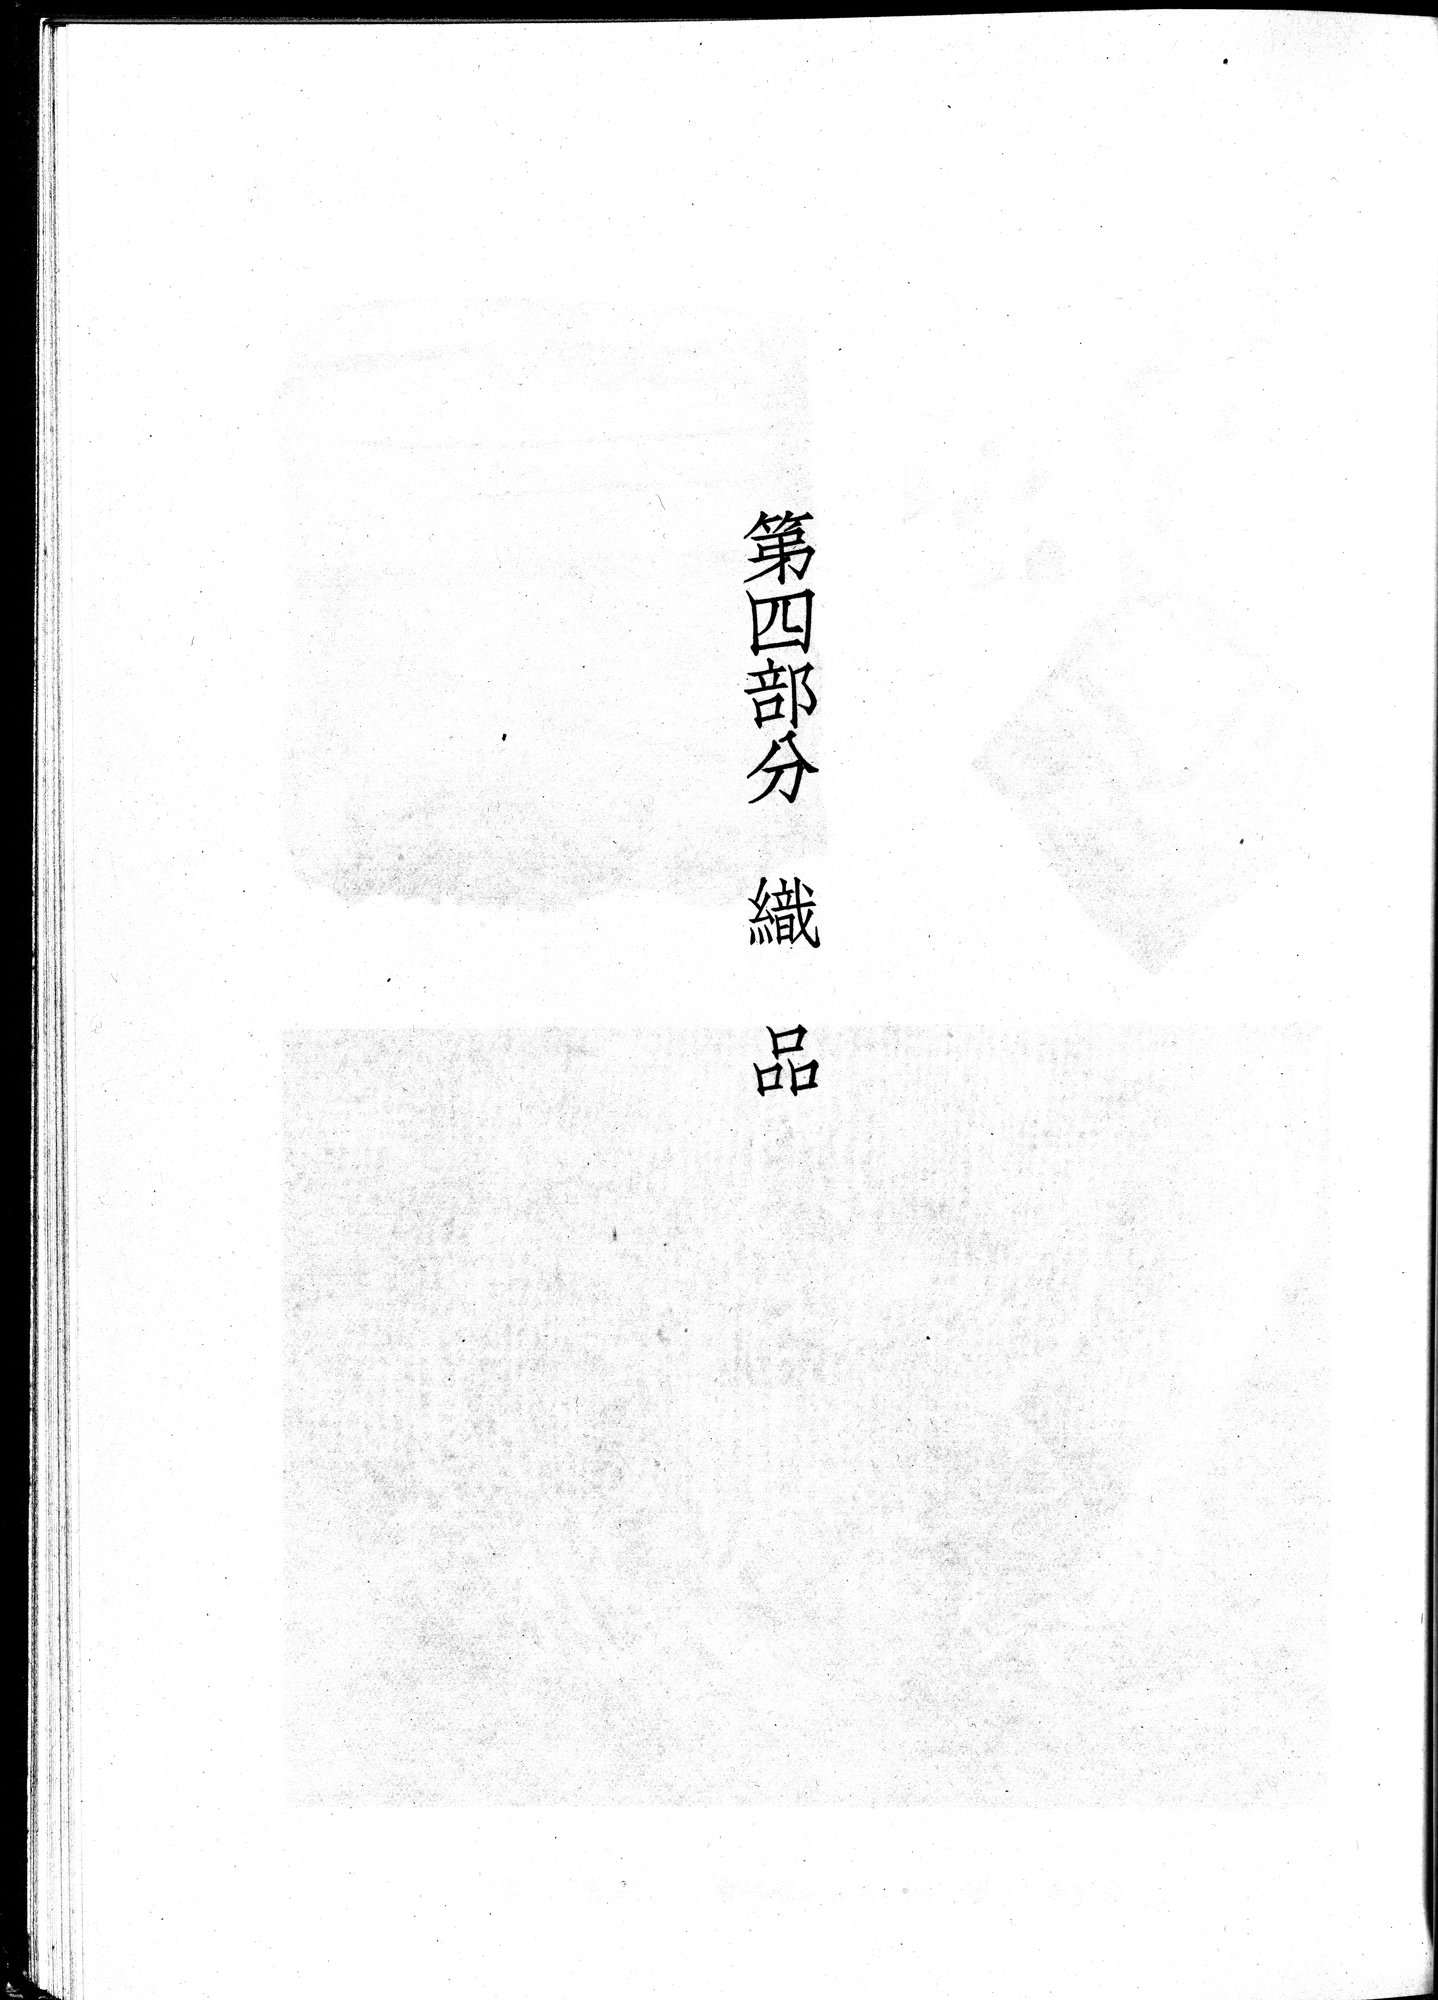 塔里木盆地考古記 : vol.1 / Page 285 (Grayscale High Resolution Image)